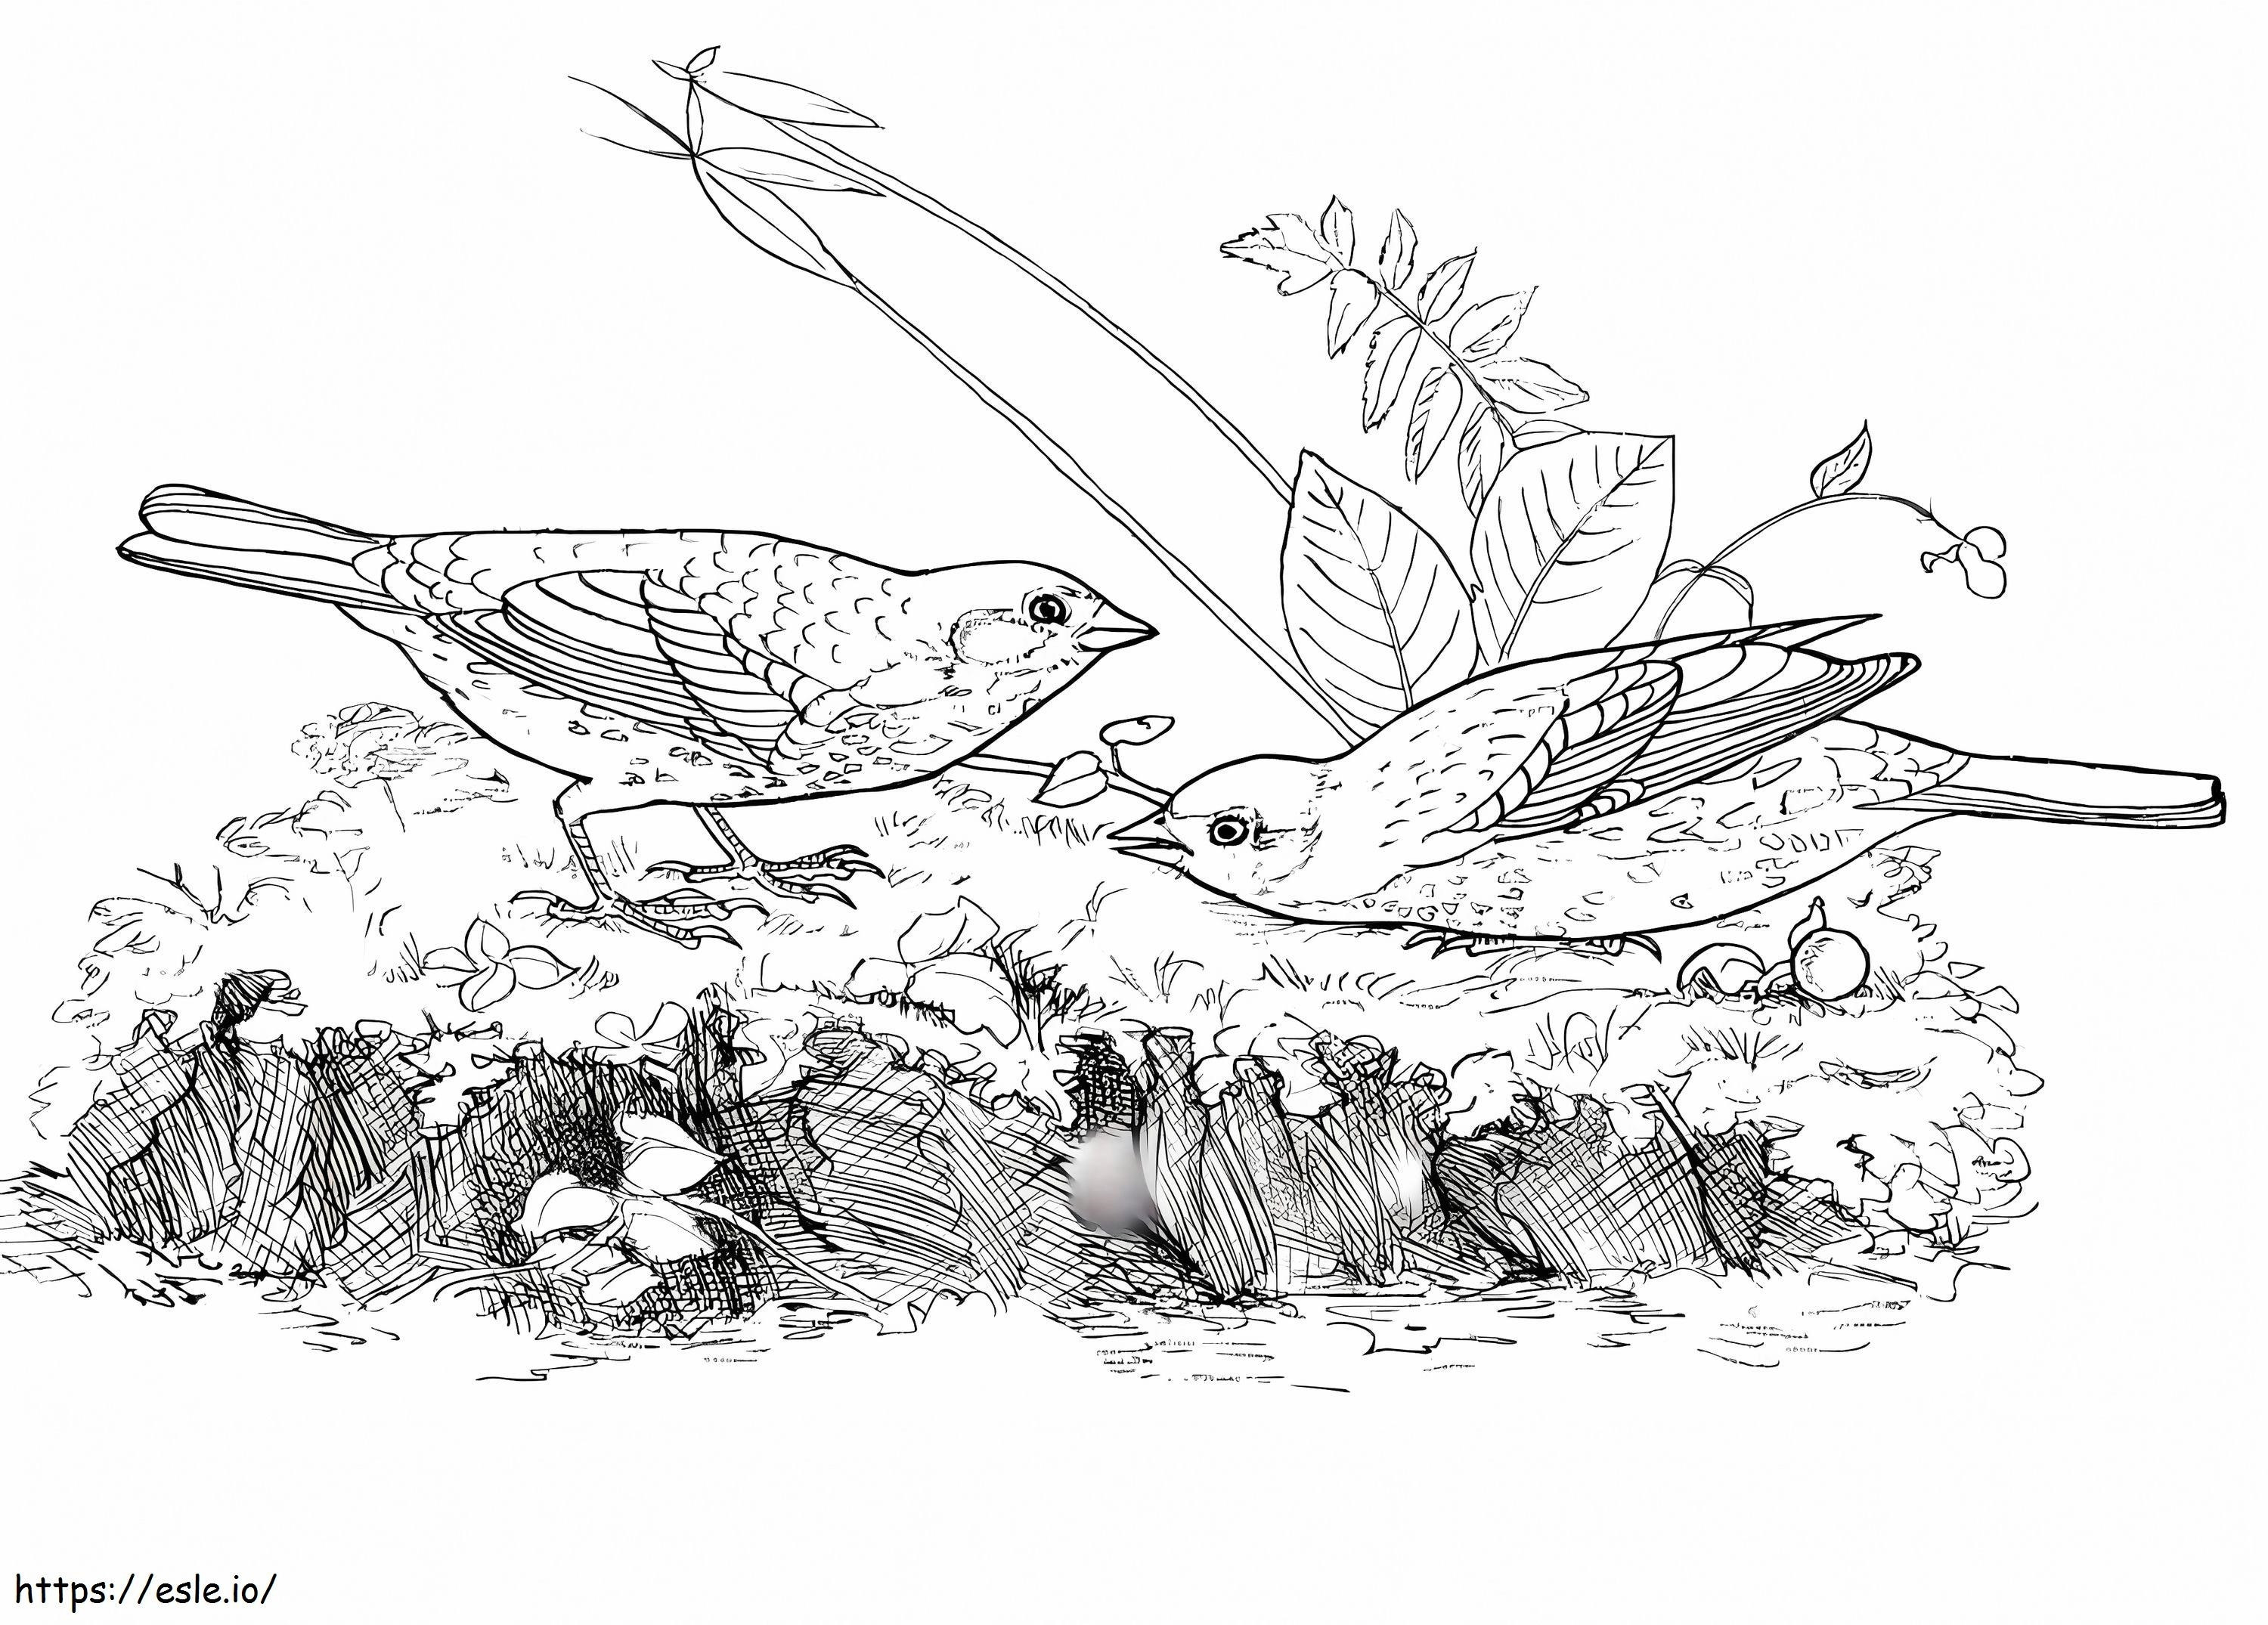 Fox Sparrows coloring page